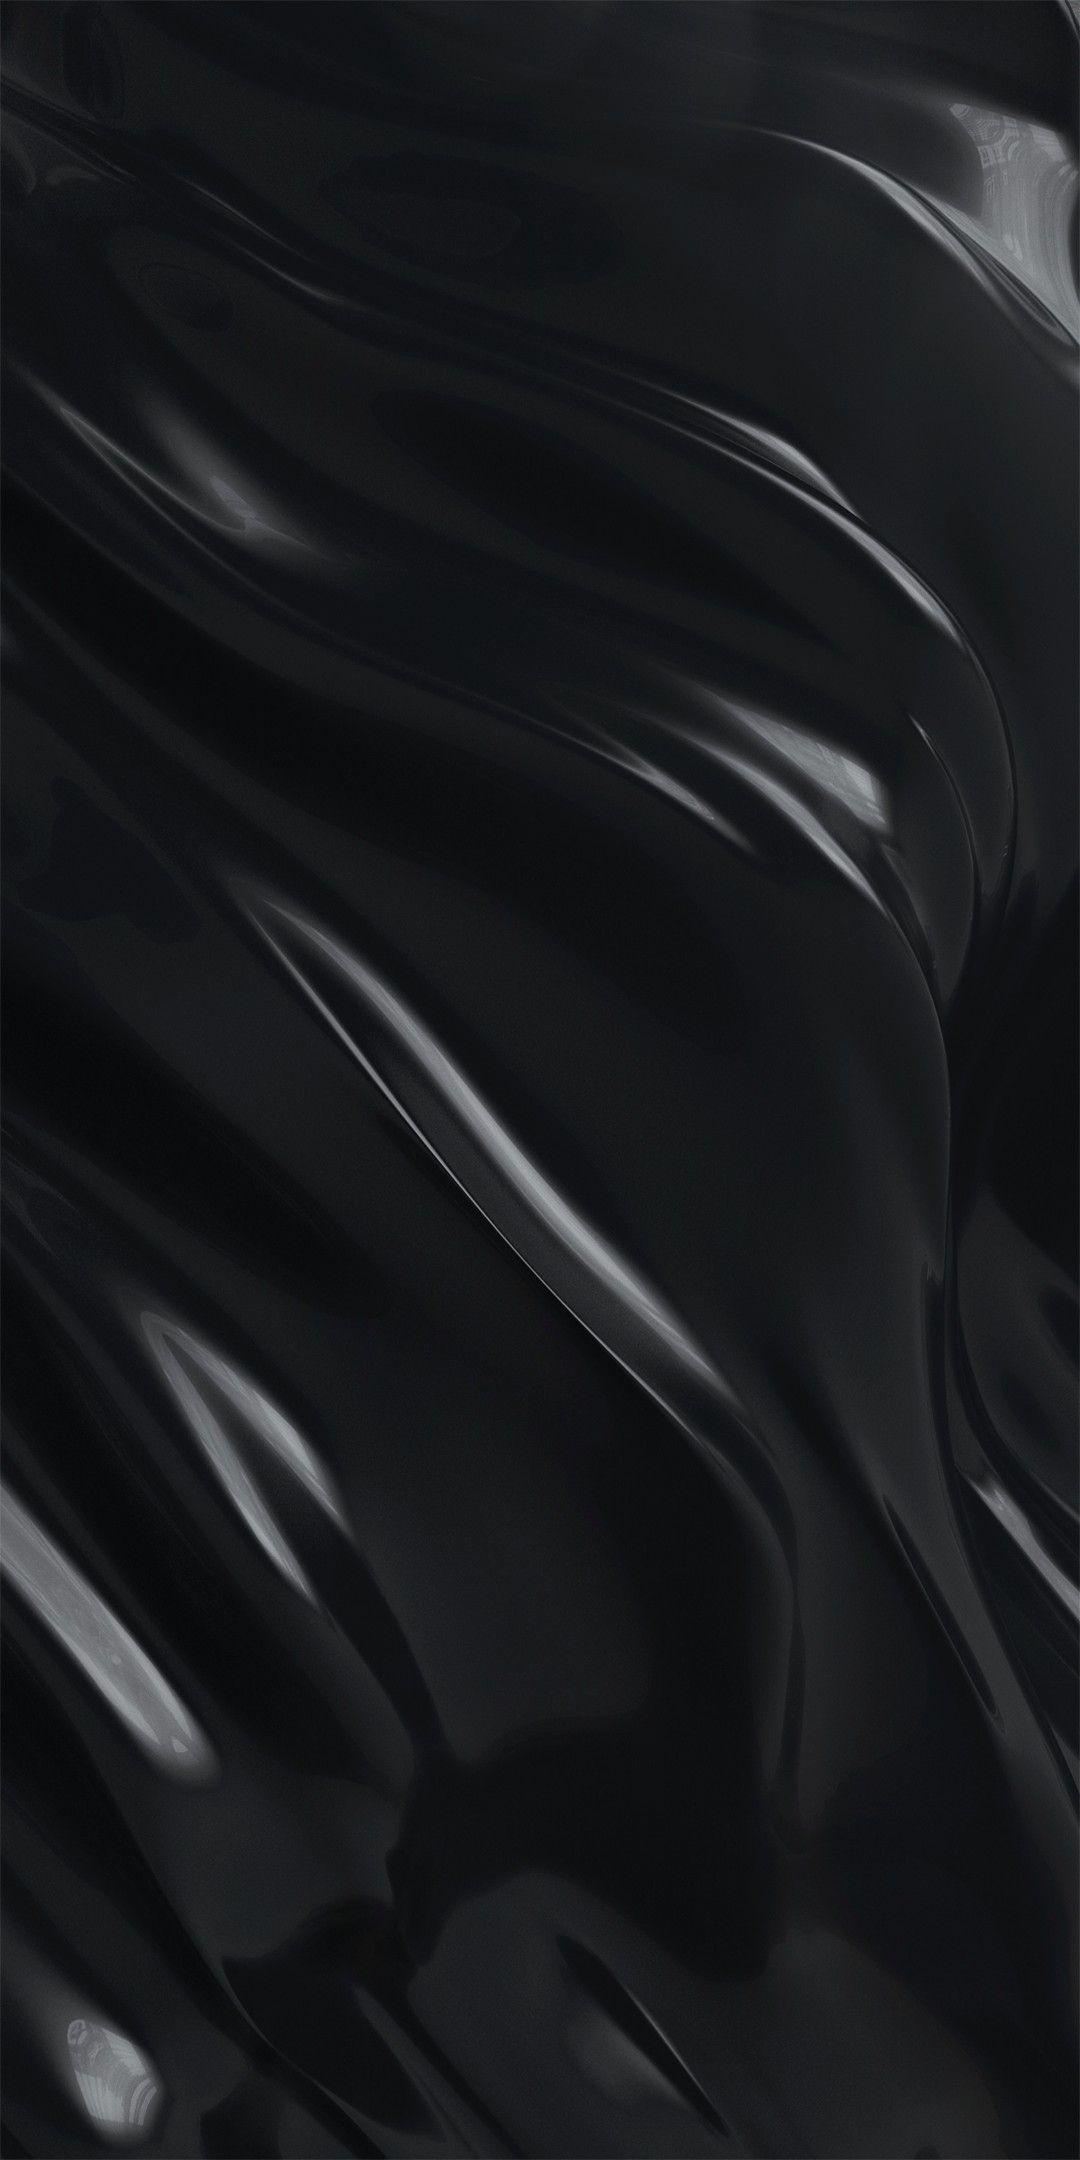 Black Liquid Hd Wallpapers Top Free Black Liquid Hd Backgrounds Wallpaperaccess